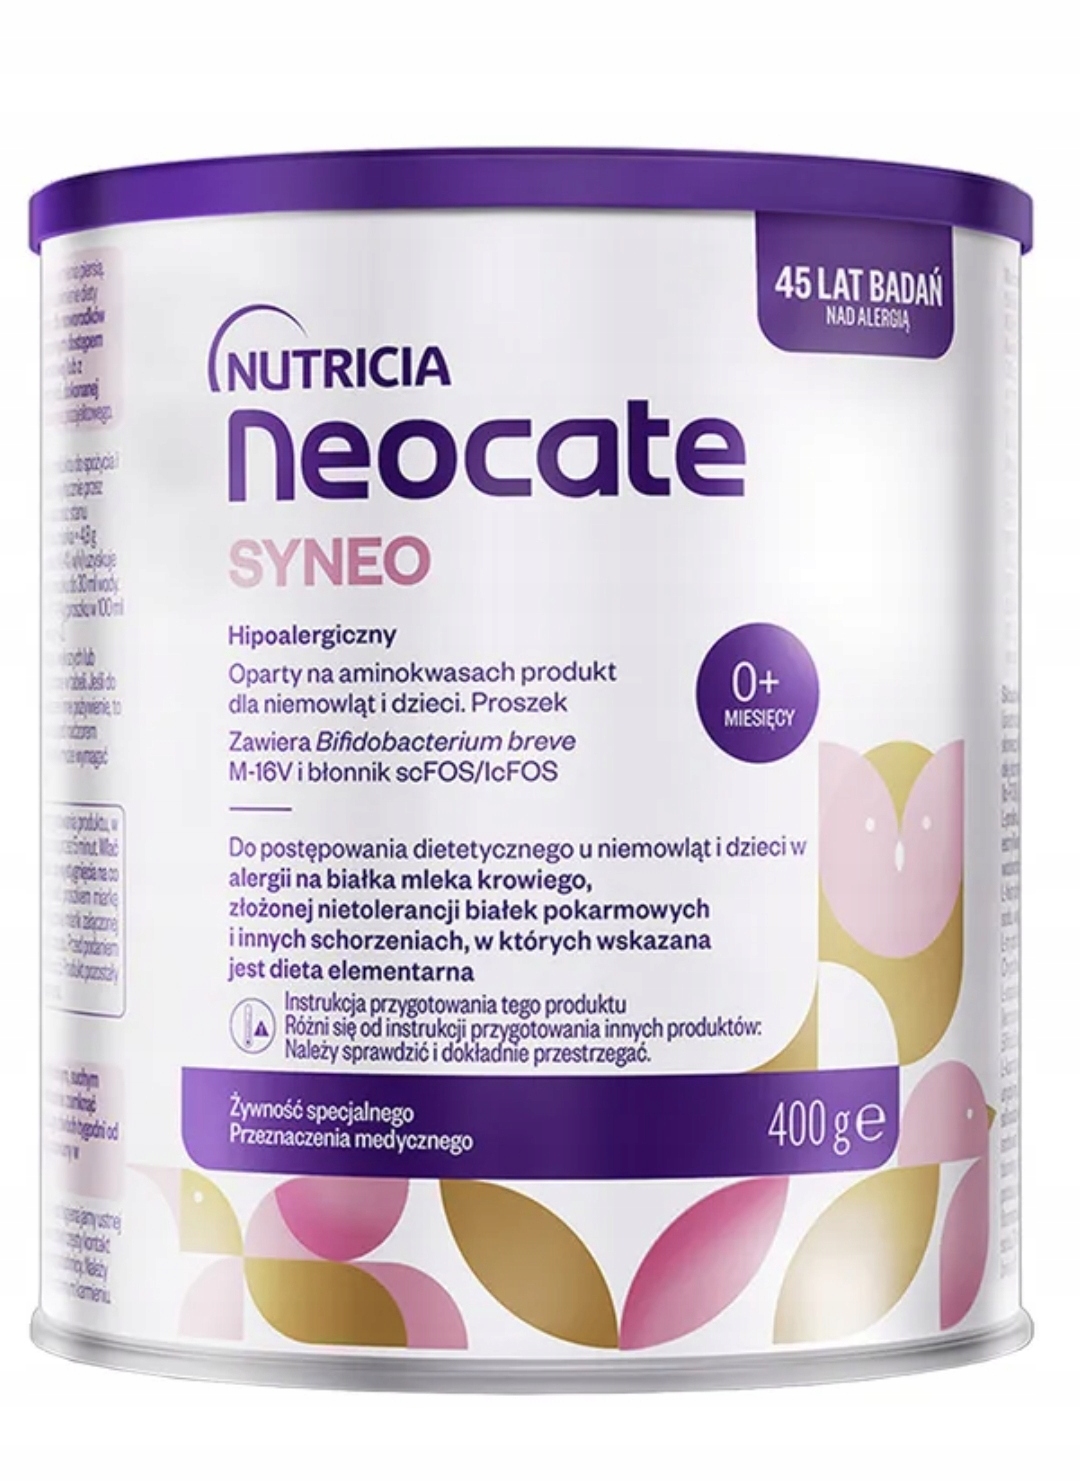 Nutricia Neocate Syneo 0+miesięcy hipoalergiczne